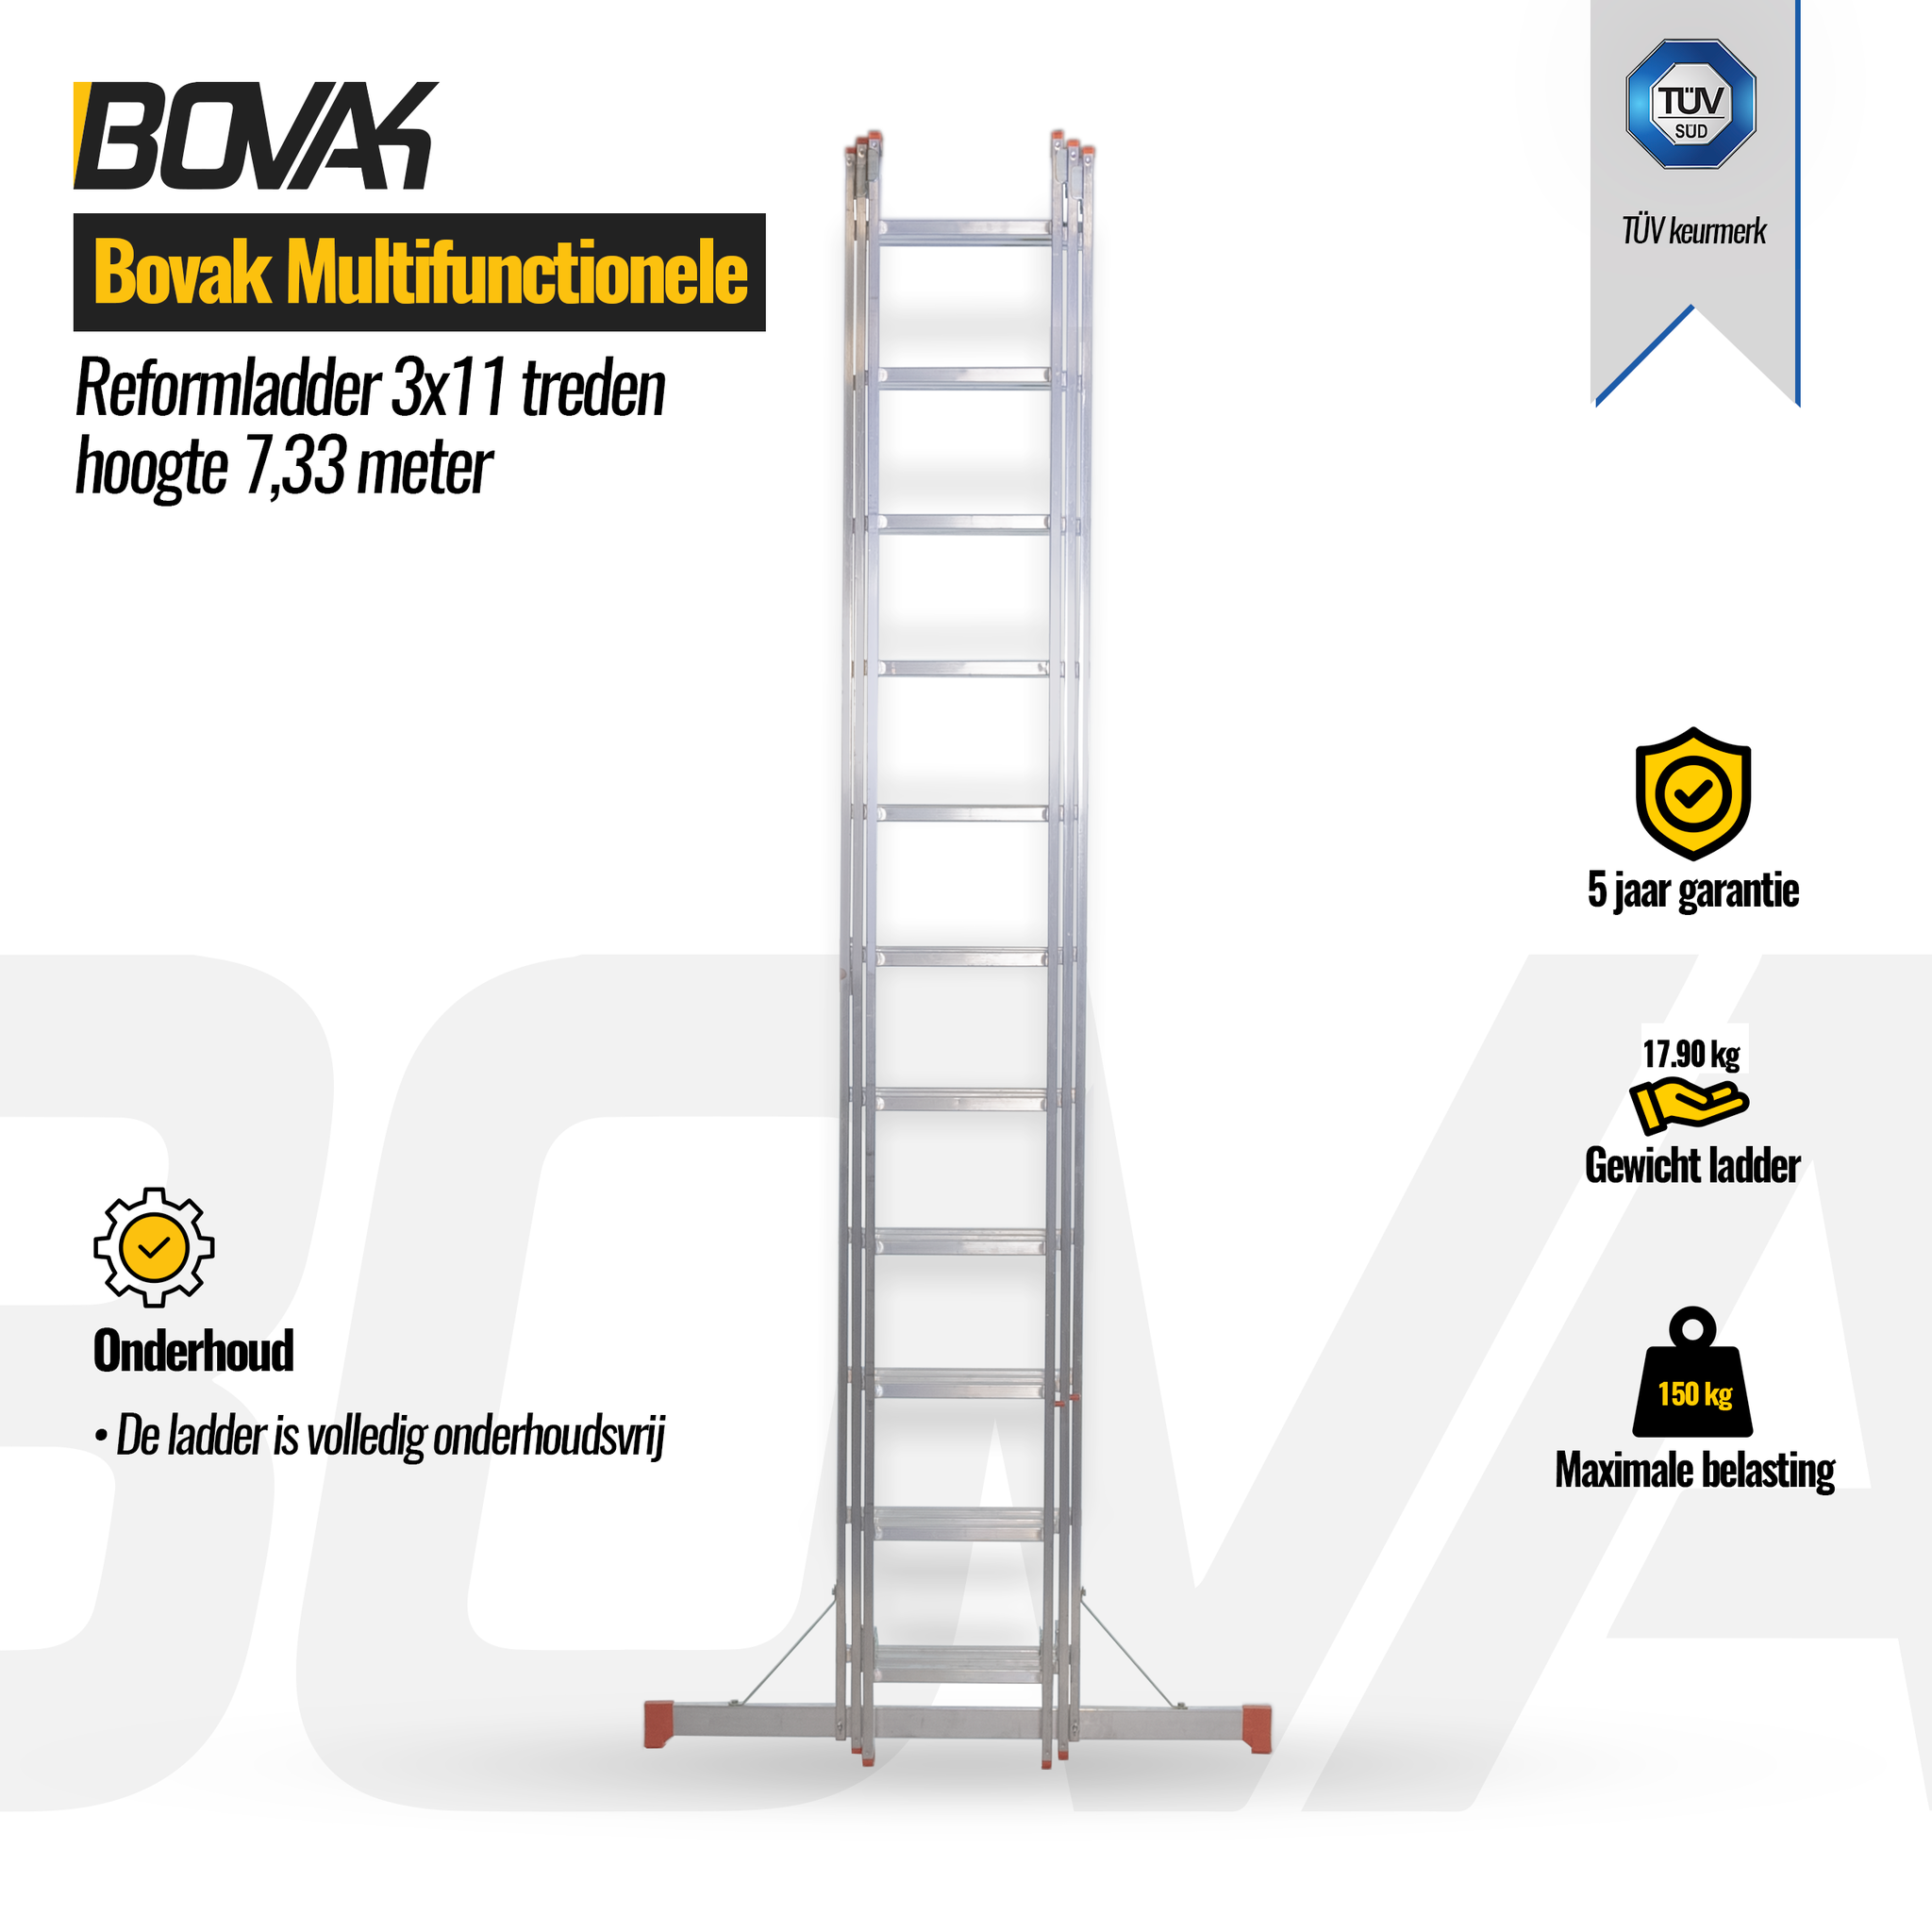 Voorwaarde Blind aangenaam Bovak Multifunctionele Reformladder 3x11 treden hoogte 7,33 meter TÜV  keurmerk - Steemastore